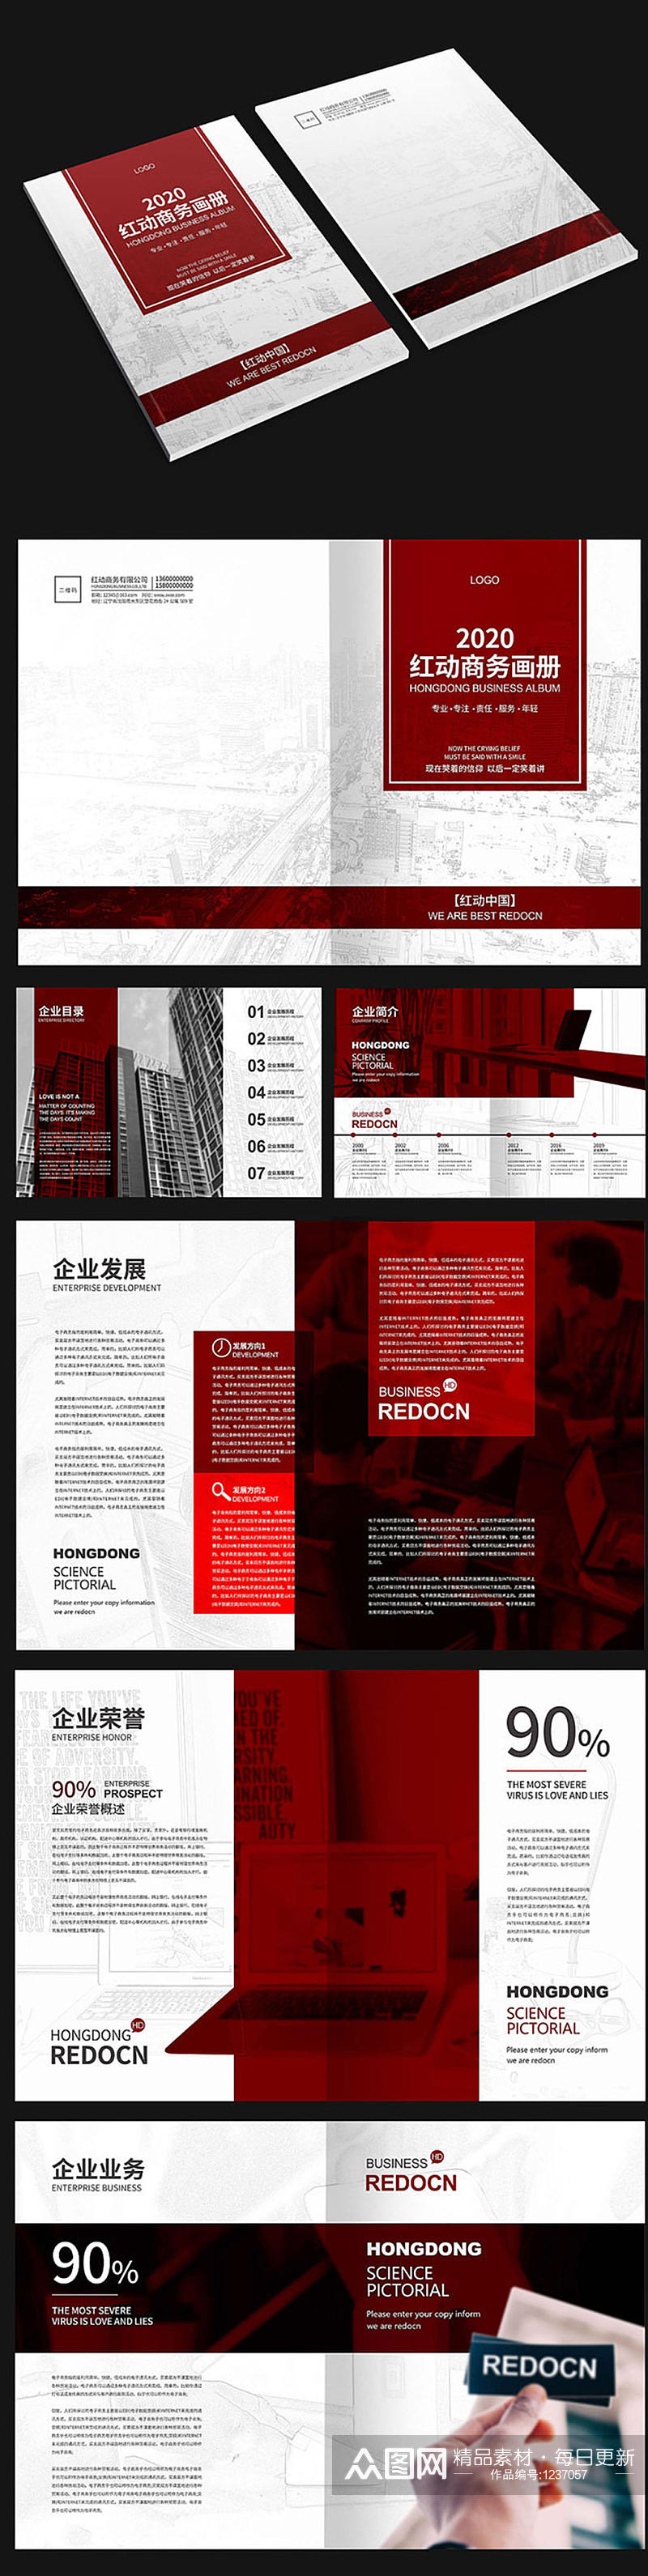 红色商务宣传画册设计素材